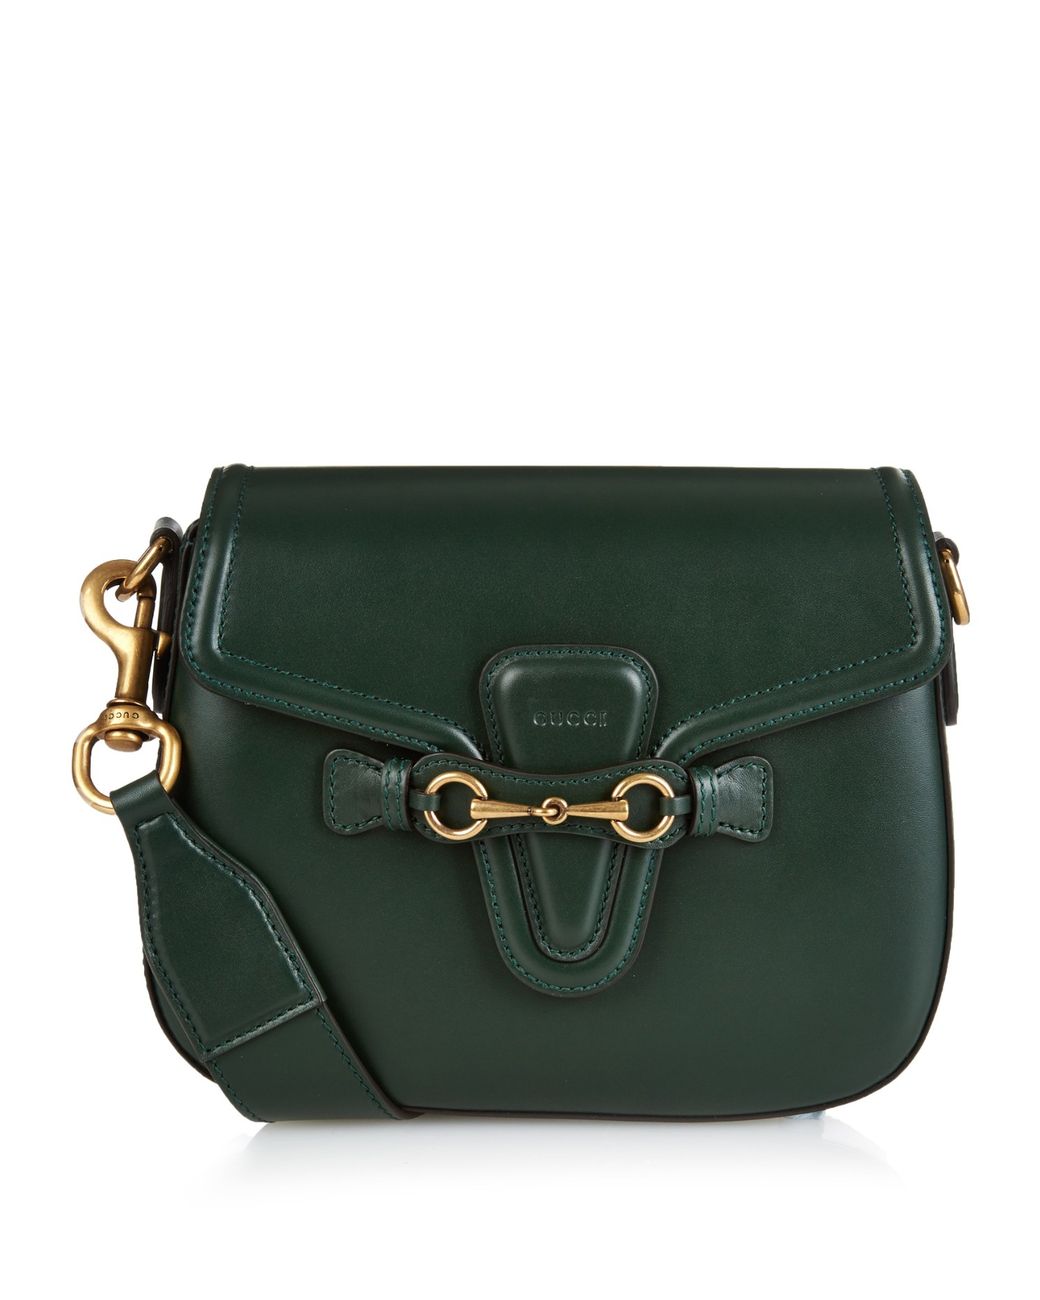 Gucci Lady Web Medium Leather Cross-body Bag in Green | Lyst